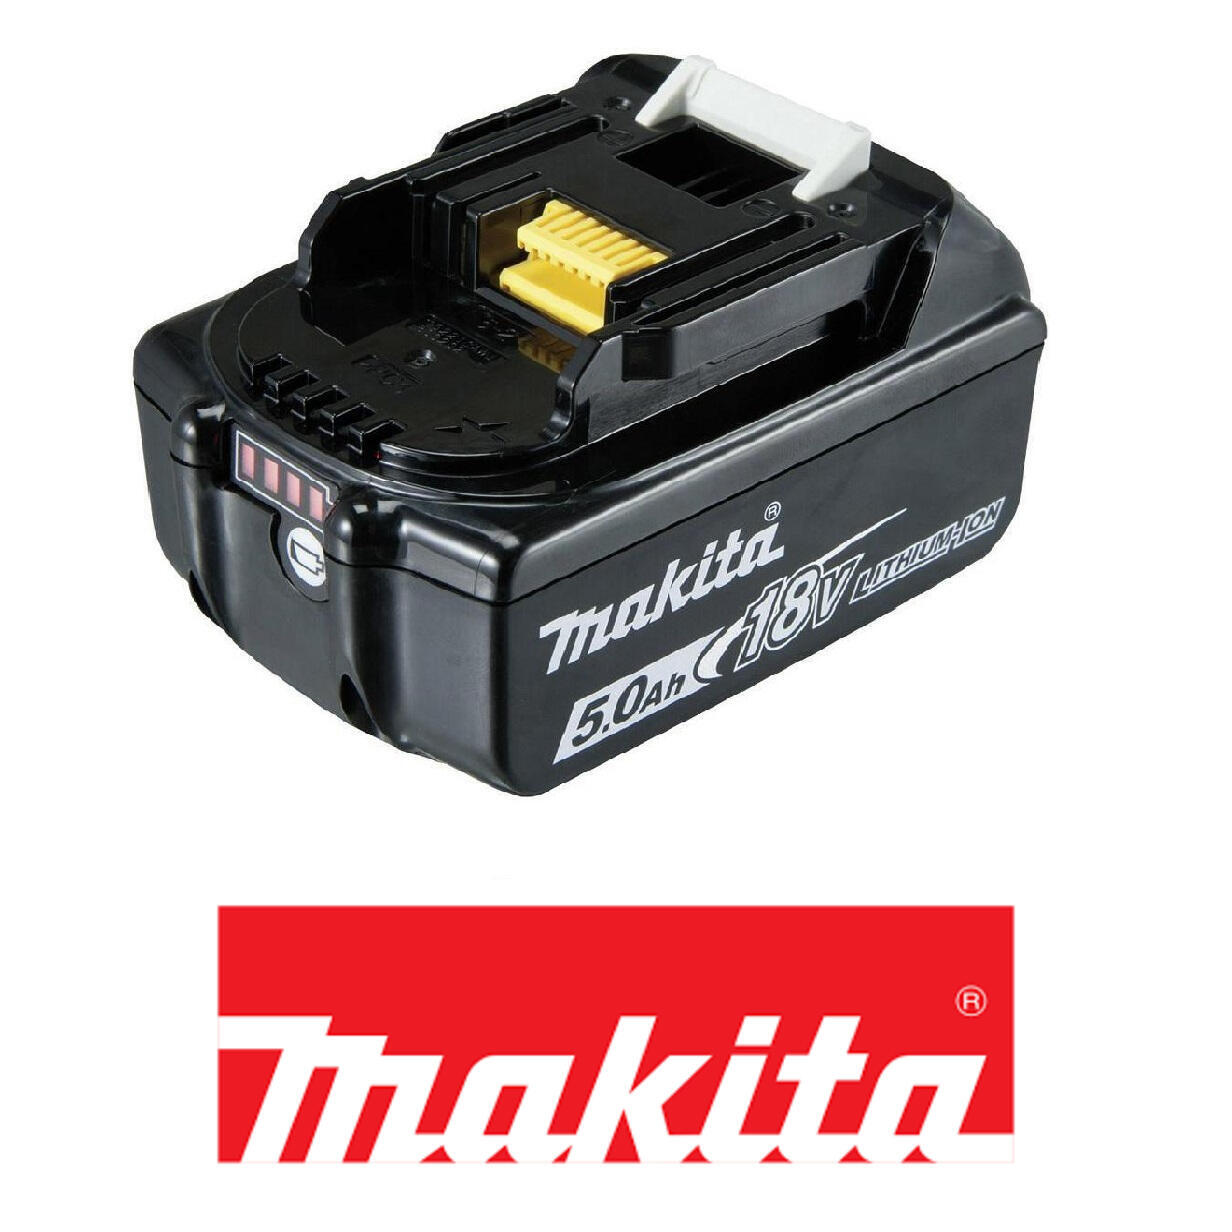 Adaptateur sur chargeur XGT en batterie LXT MAKITA 191C10-7